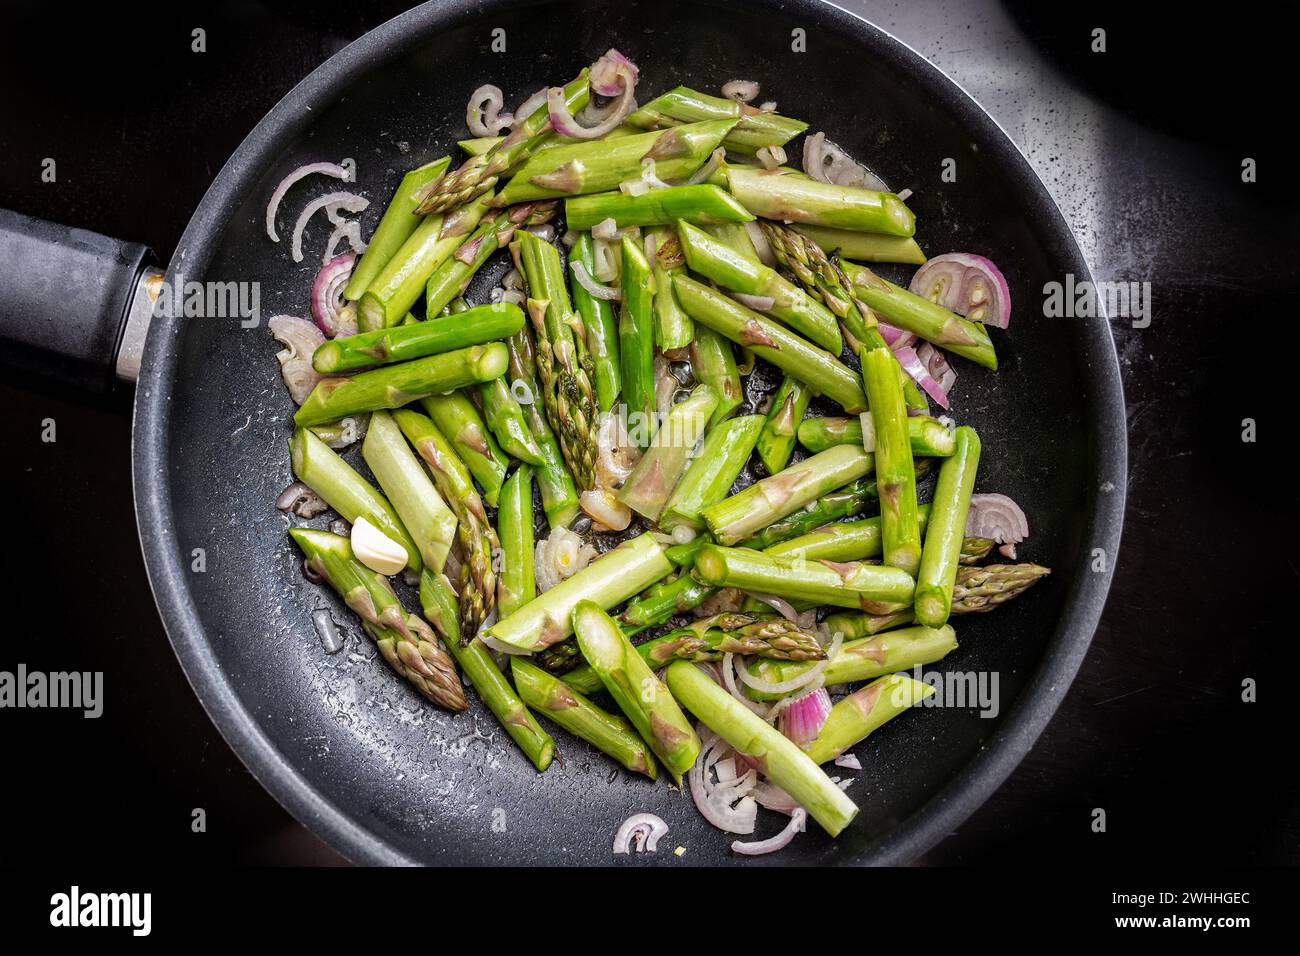 Asparagi verdi e cipolla rossa in una padella sul piano cottura nero, cucinando un sano pasto vegetariano con verdure di stagione Foto Stock